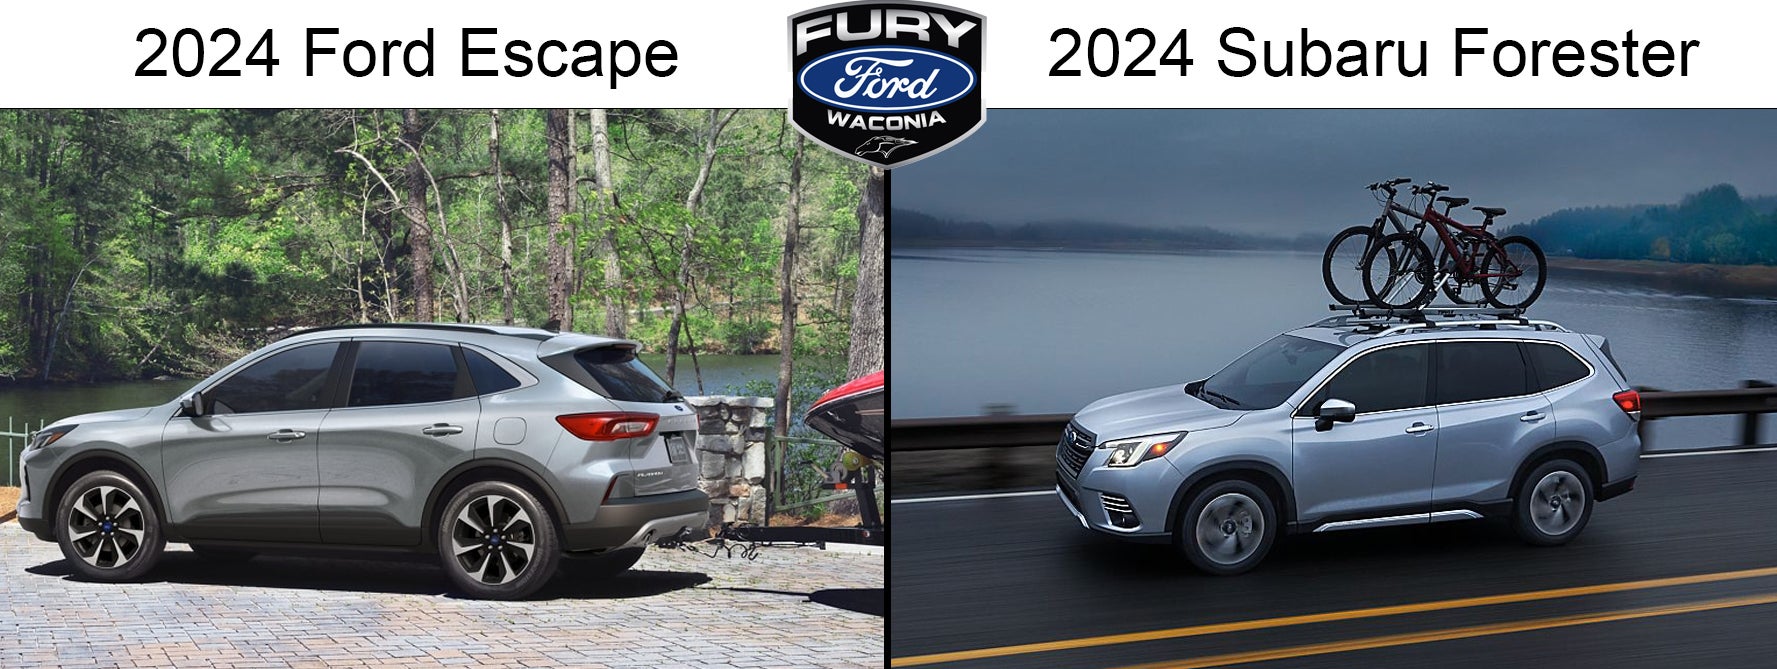 2024 Ford Escape vs 2024 Subaru Forester